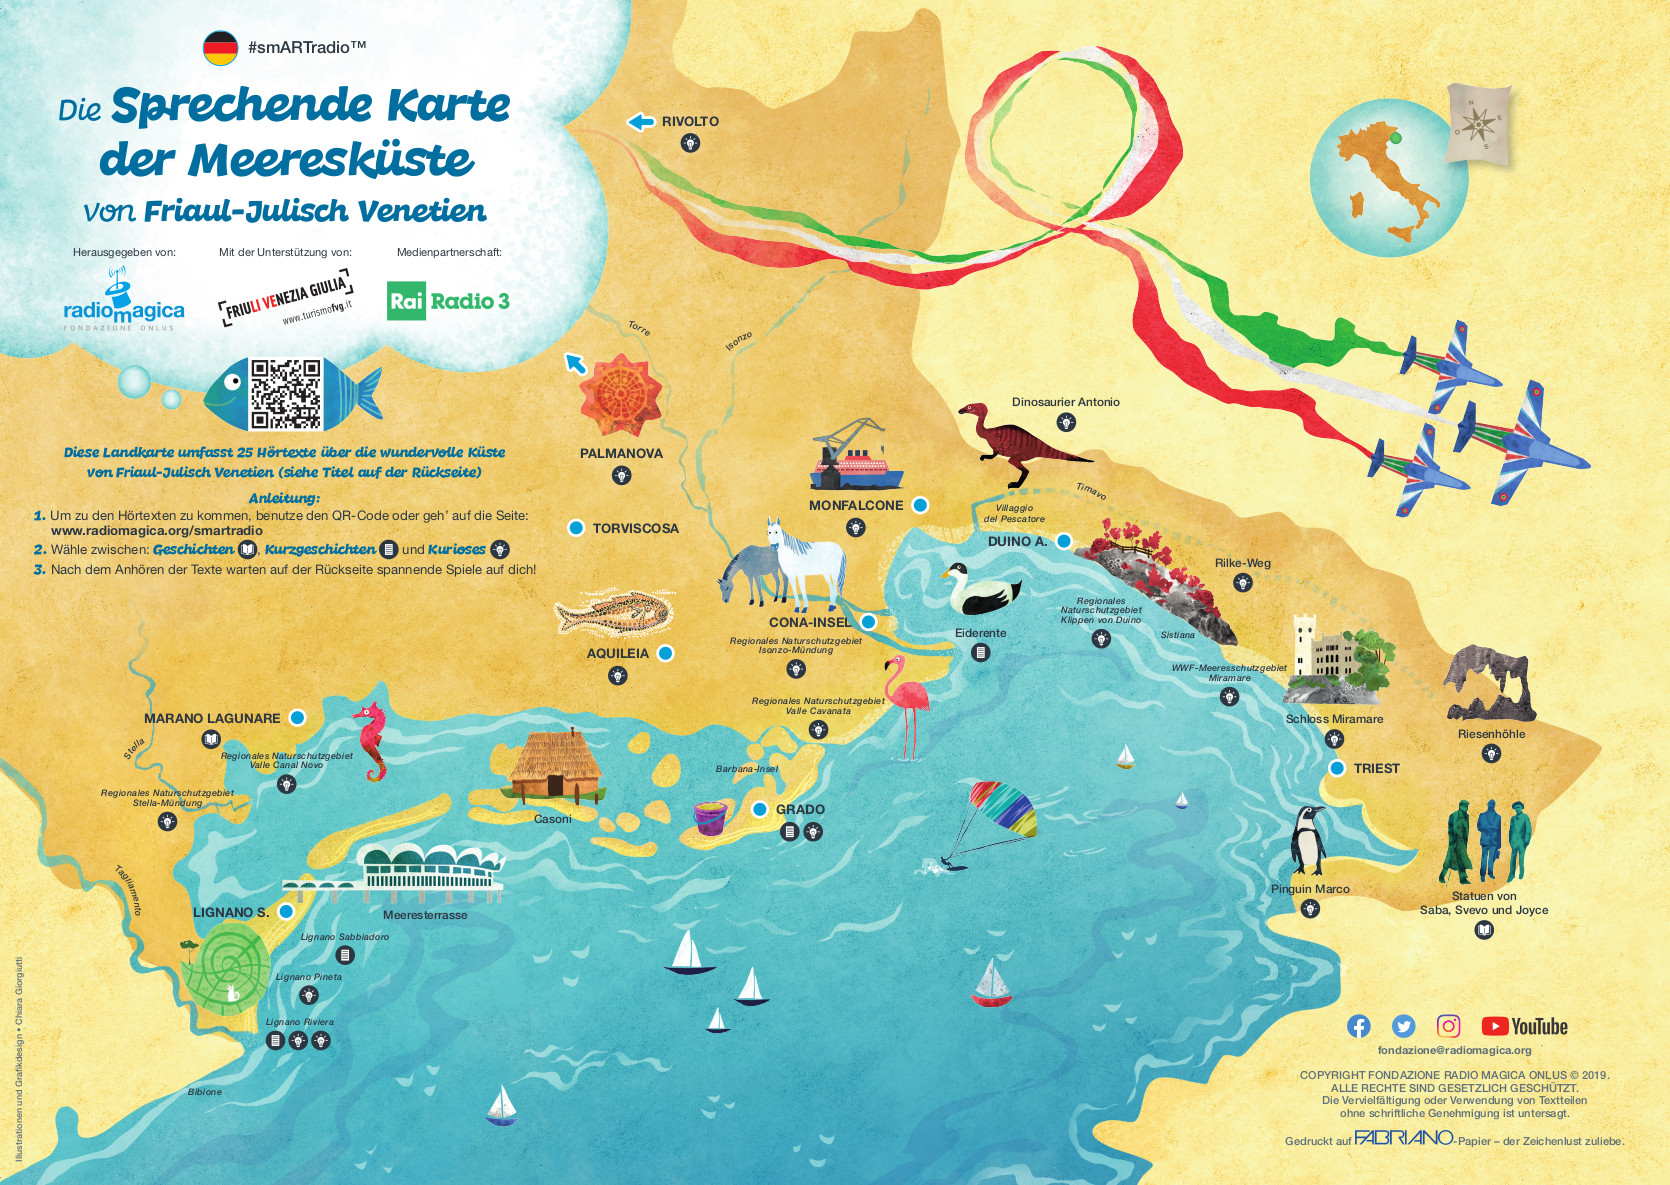 Die Sprechende Karte der Meeresküste von Friaul-Julisch Venetien